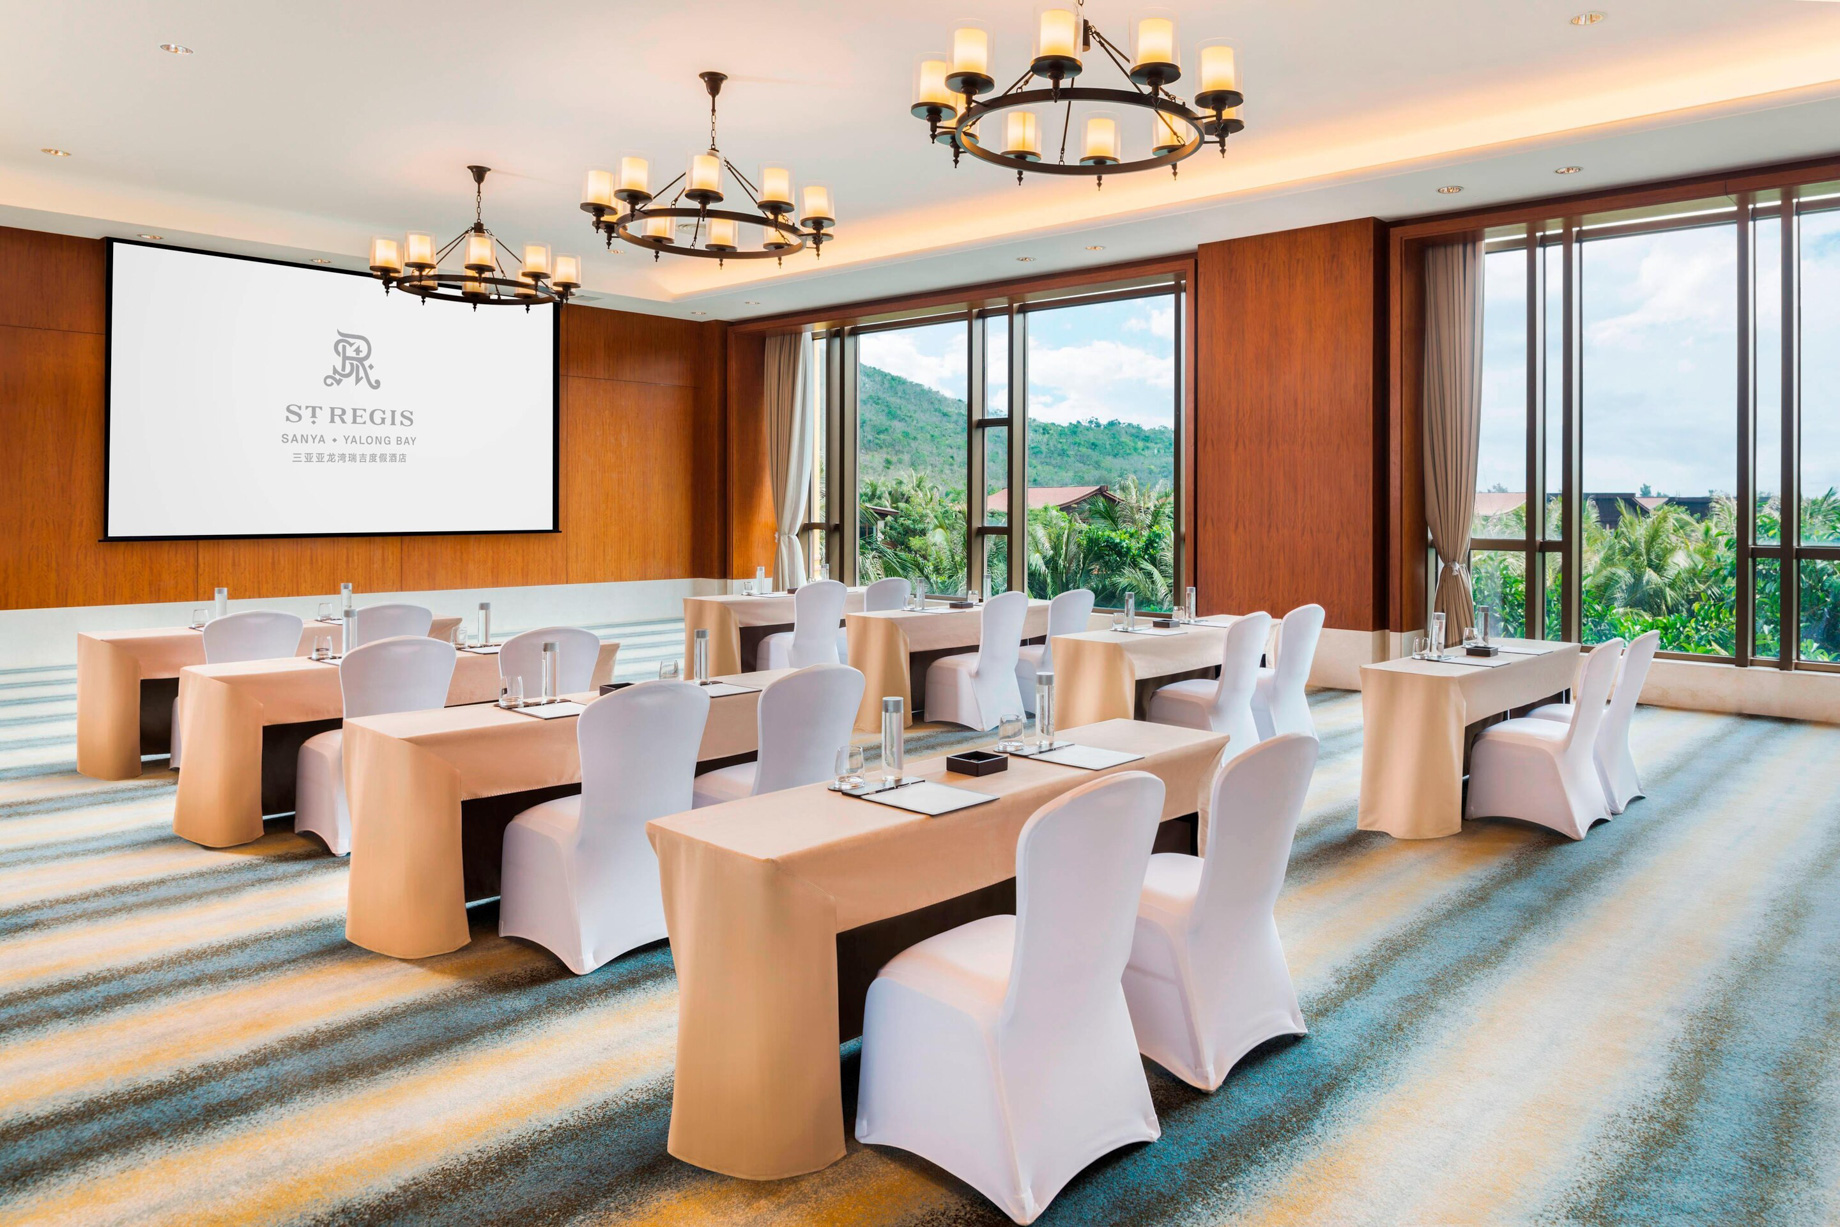 The St. Regis Sanya Yalong Bay Resort – Hainan, China – VIP Meeting Room